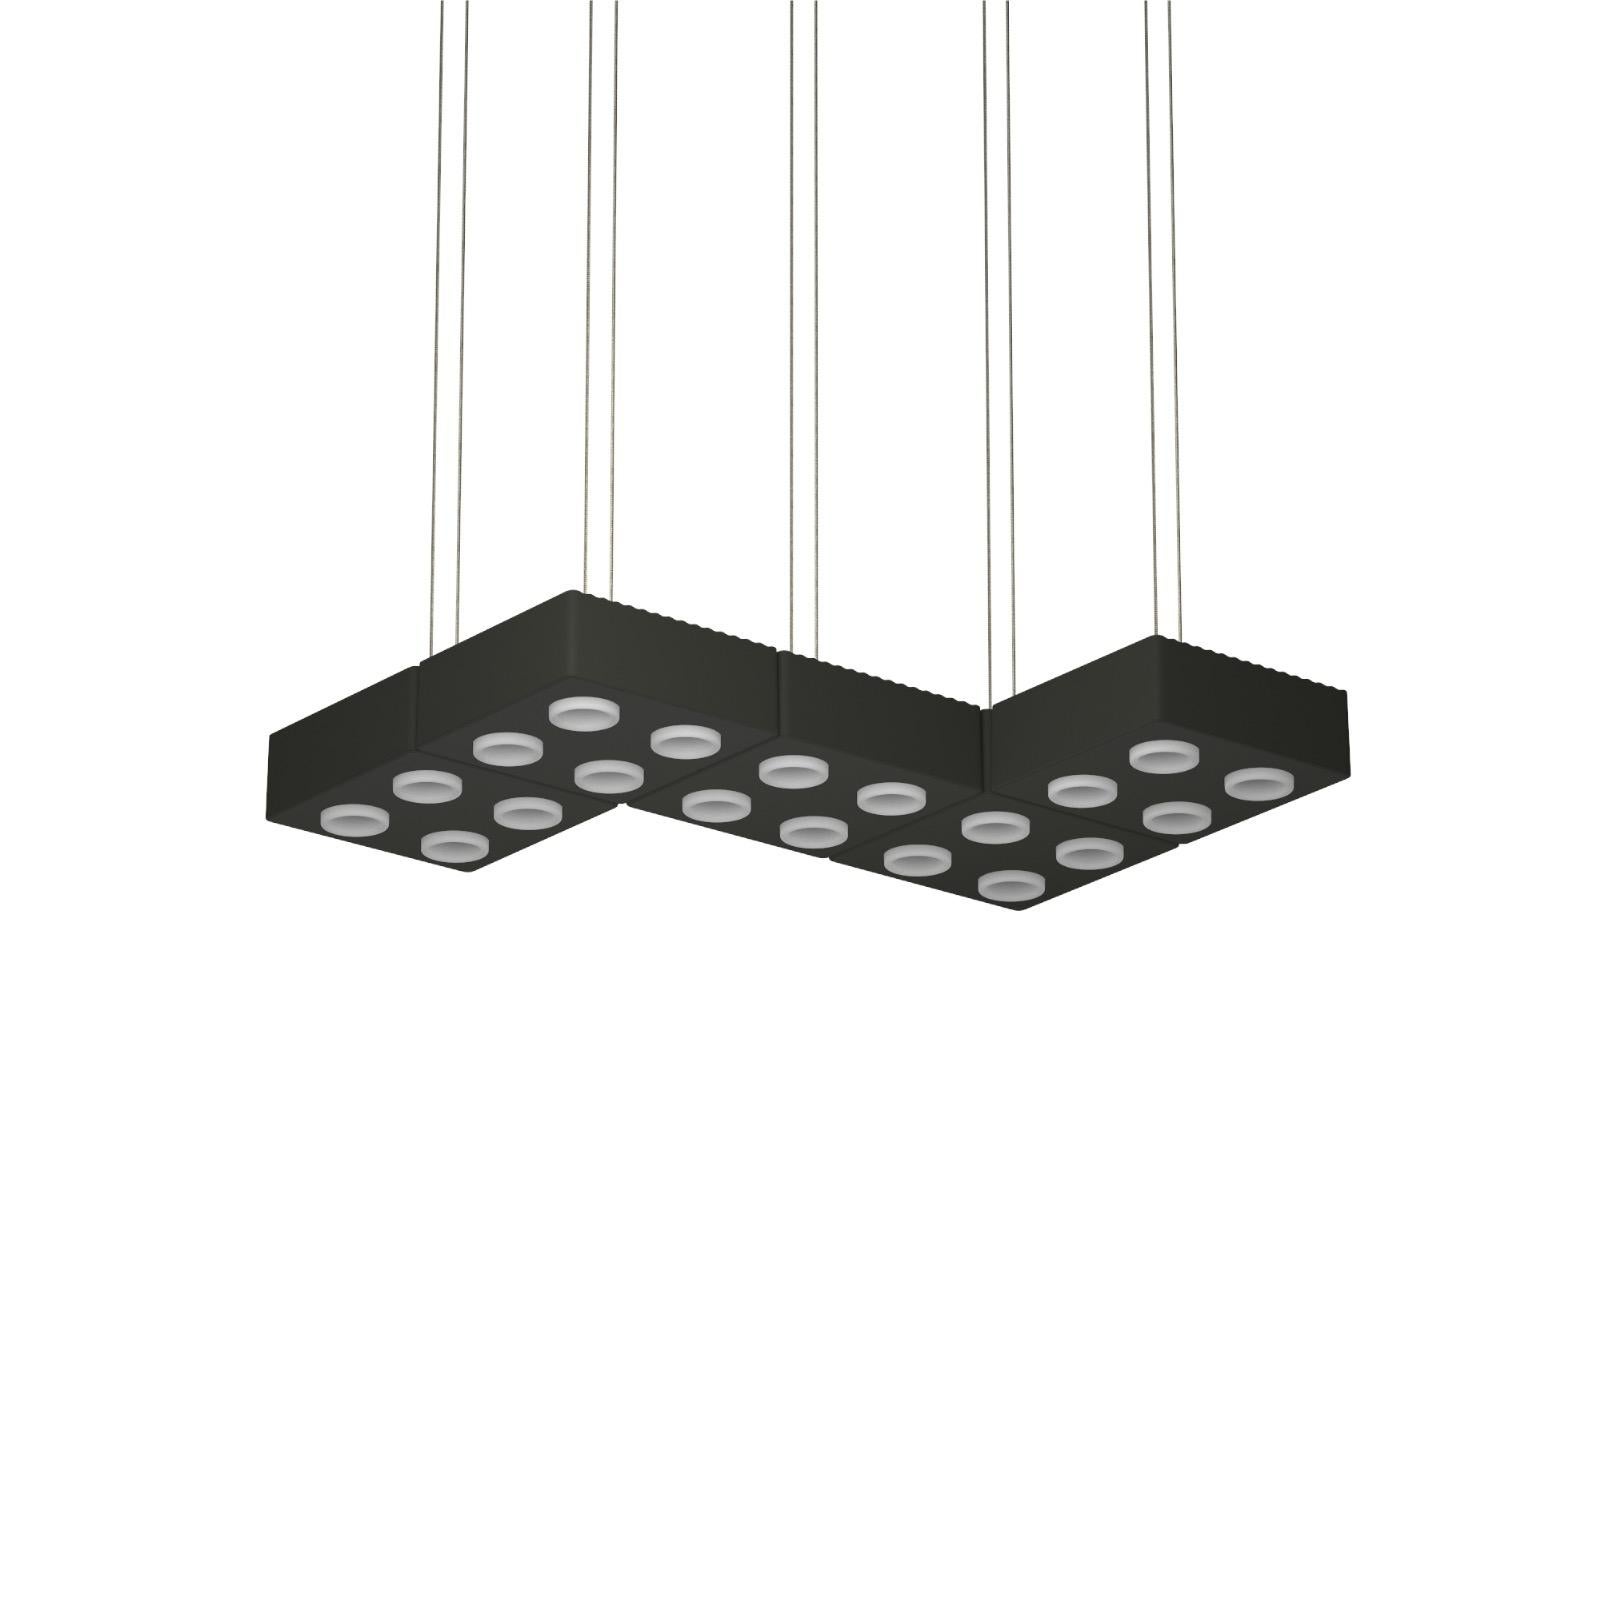 Lampe pendante Domino de Sylvain Willenz x AGO Lighting
Charcoal - Lampe suspendue Quintet

Matériaux : Aluminium 
Source lumineuse : LED intégrée (COB), DC
Watt. 75 W (15W x 5)
Temp. de couleur 2700 / 3000K
Longueur du câble : 3M 

Couleurs